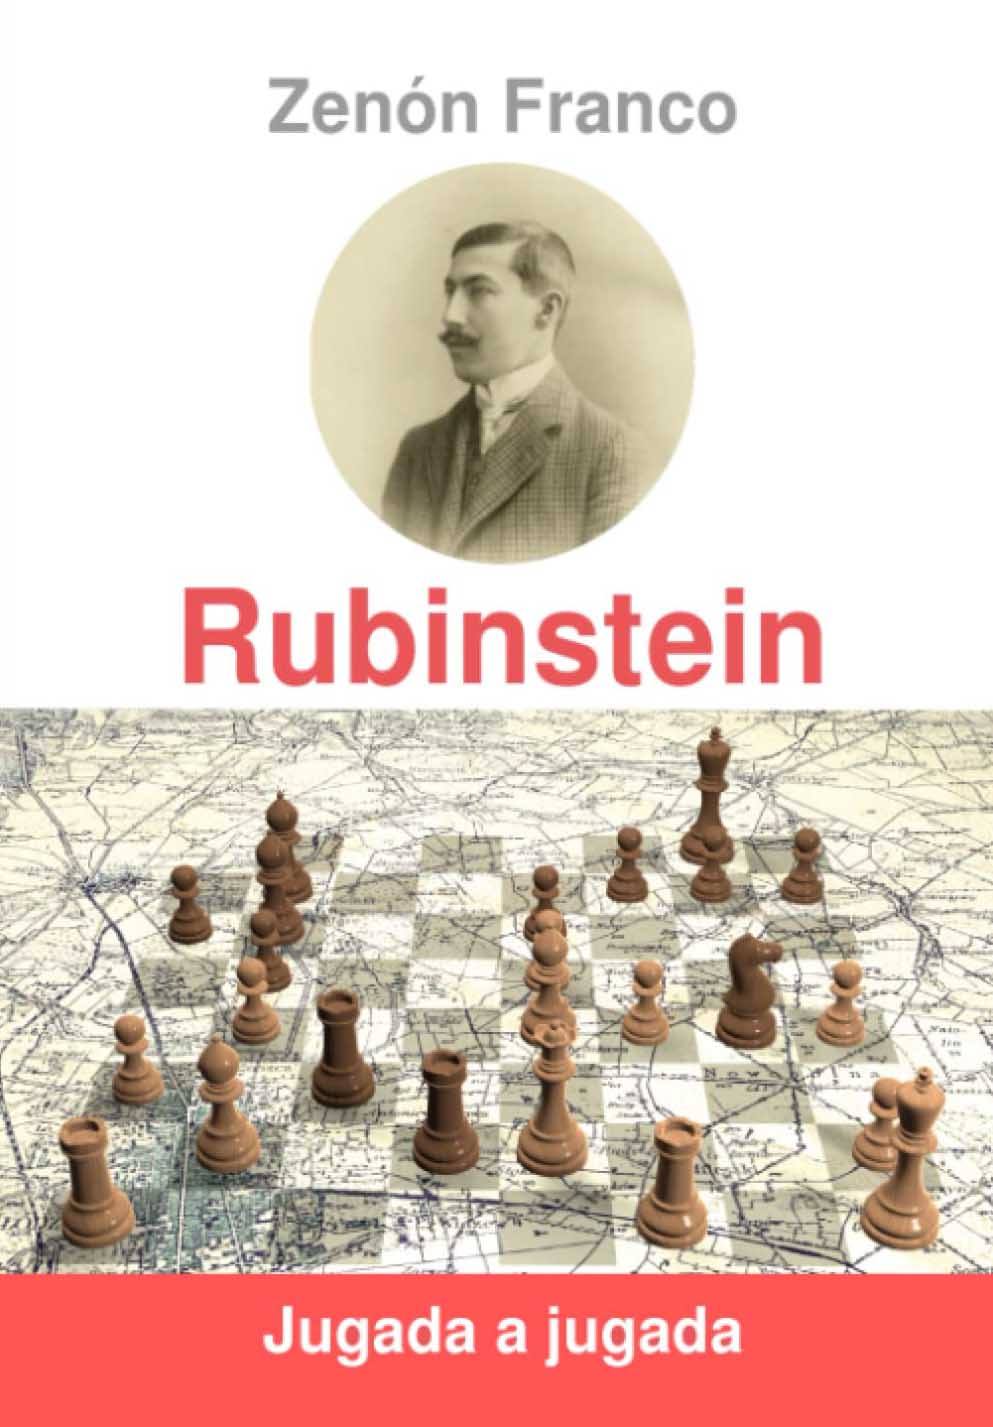 Rubinstein jugada a jugada